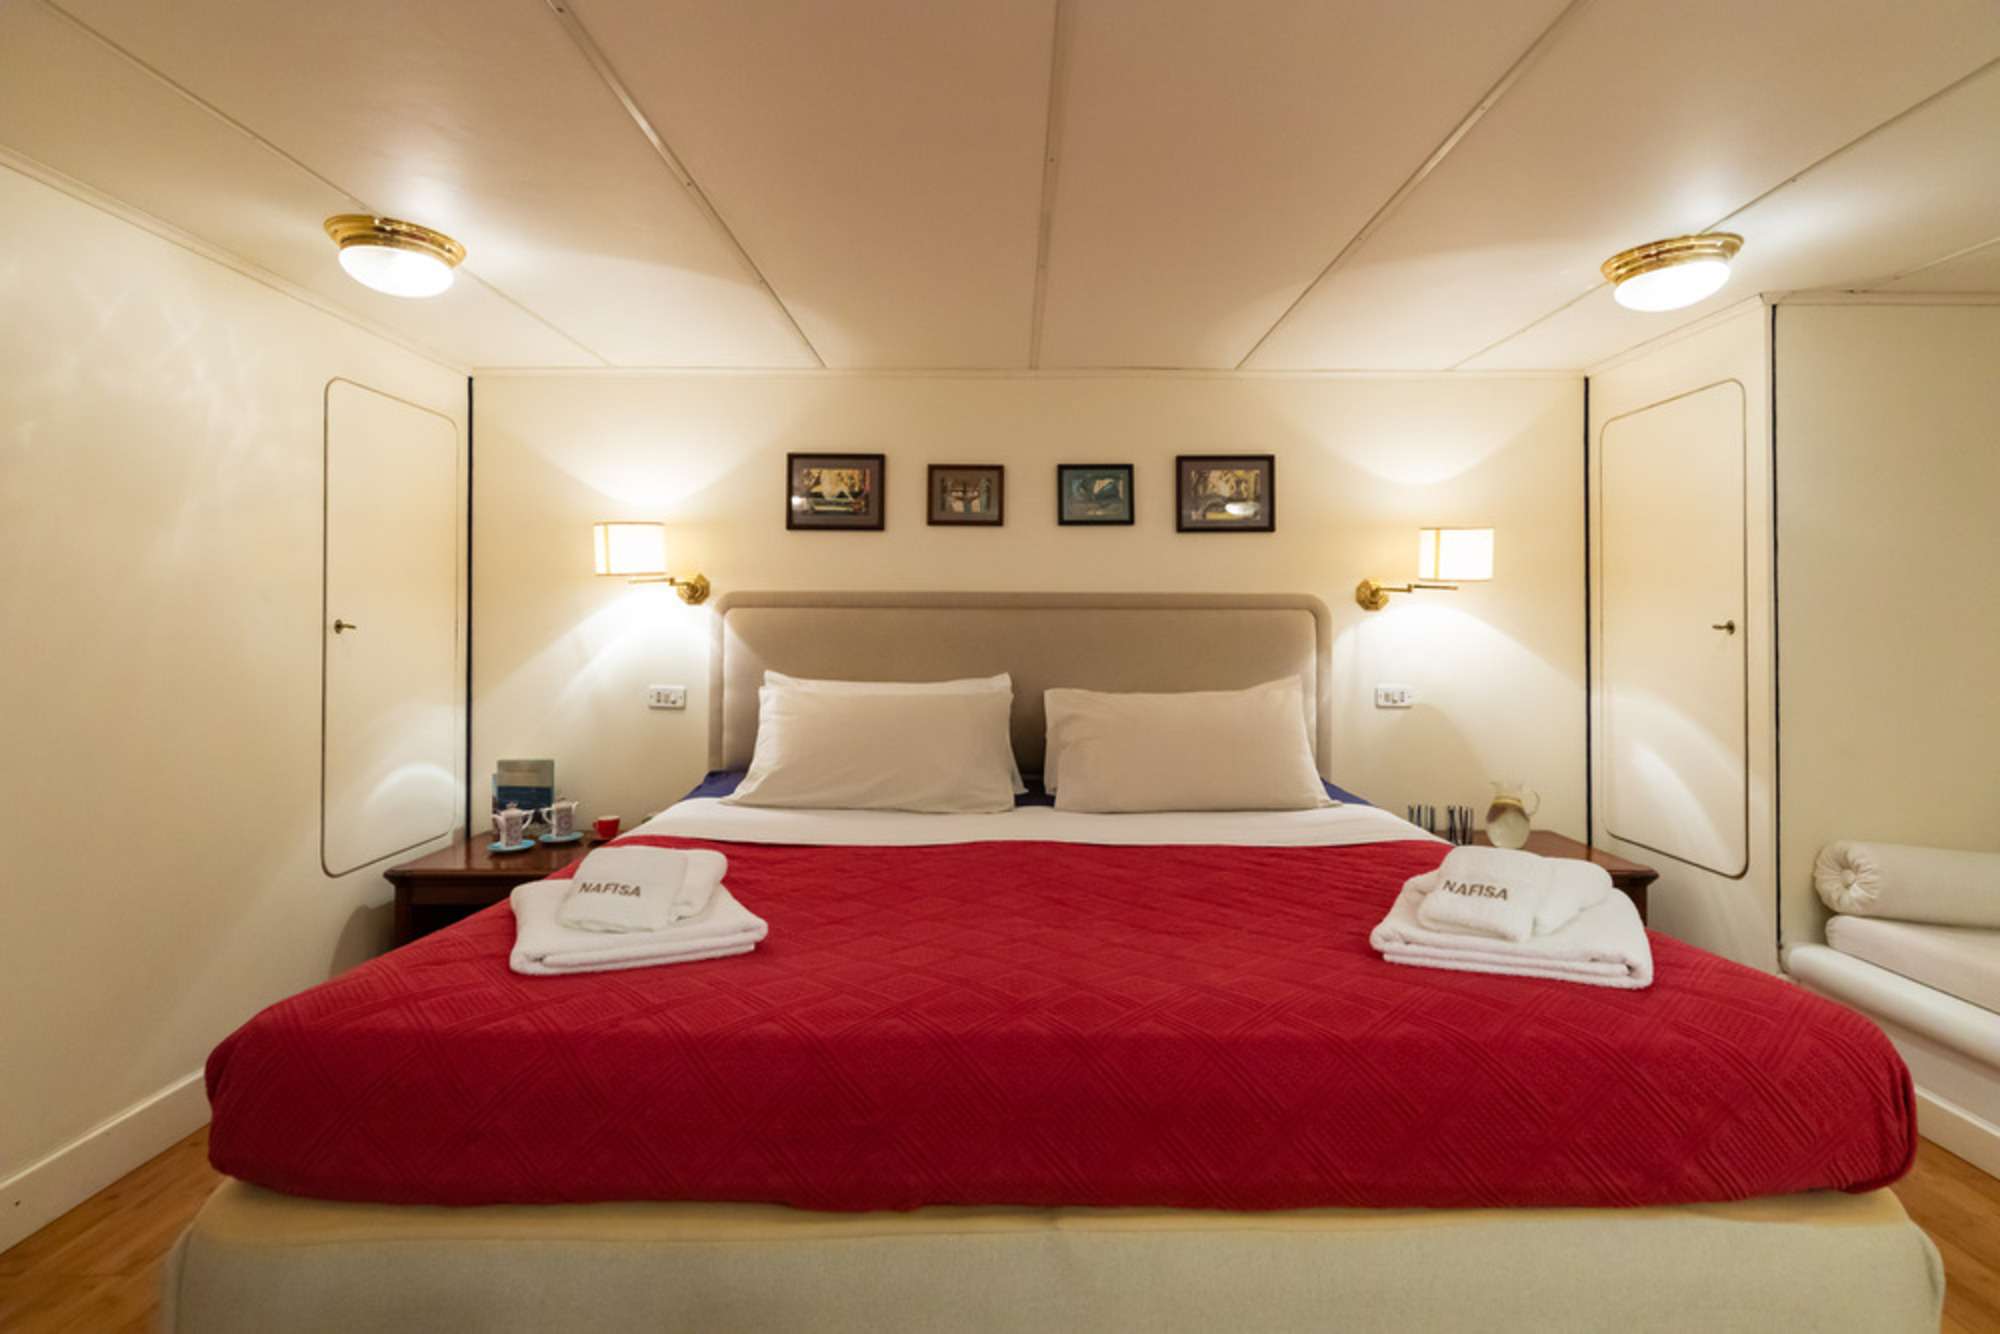 NAFISA Yacht Charter - Master Cabin